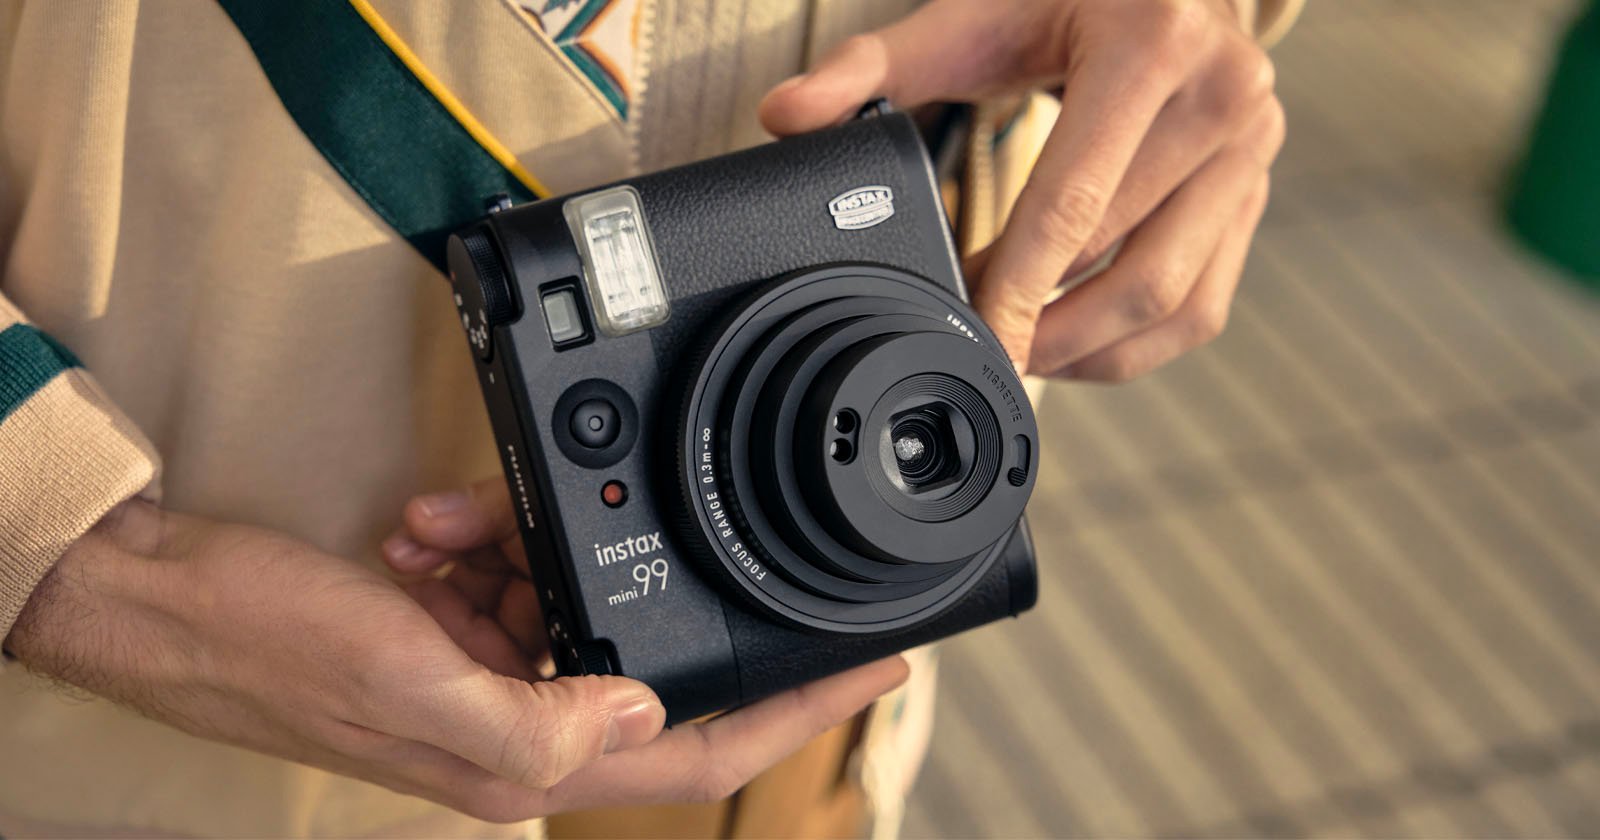 The Fujifilm Instax Mini 99 is a More Advanced Instant Camera